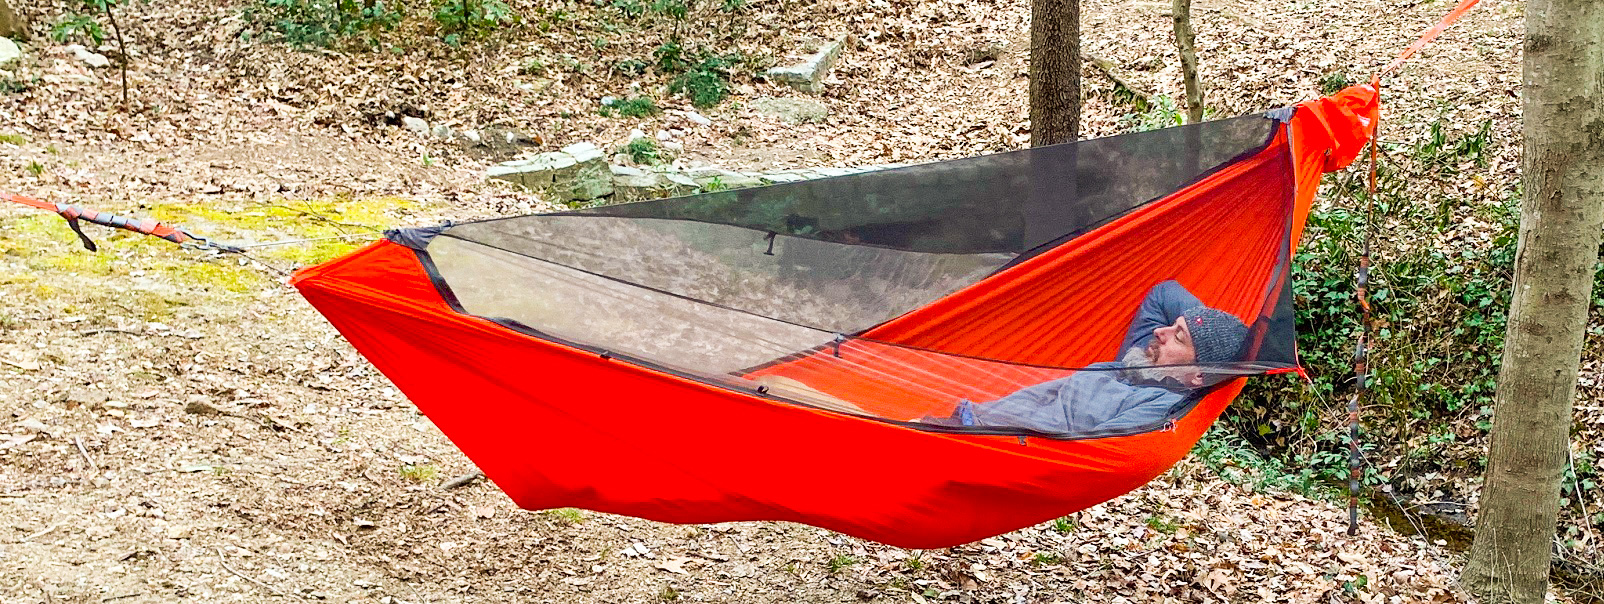 Mantis - a lightweight universal tent-hammock